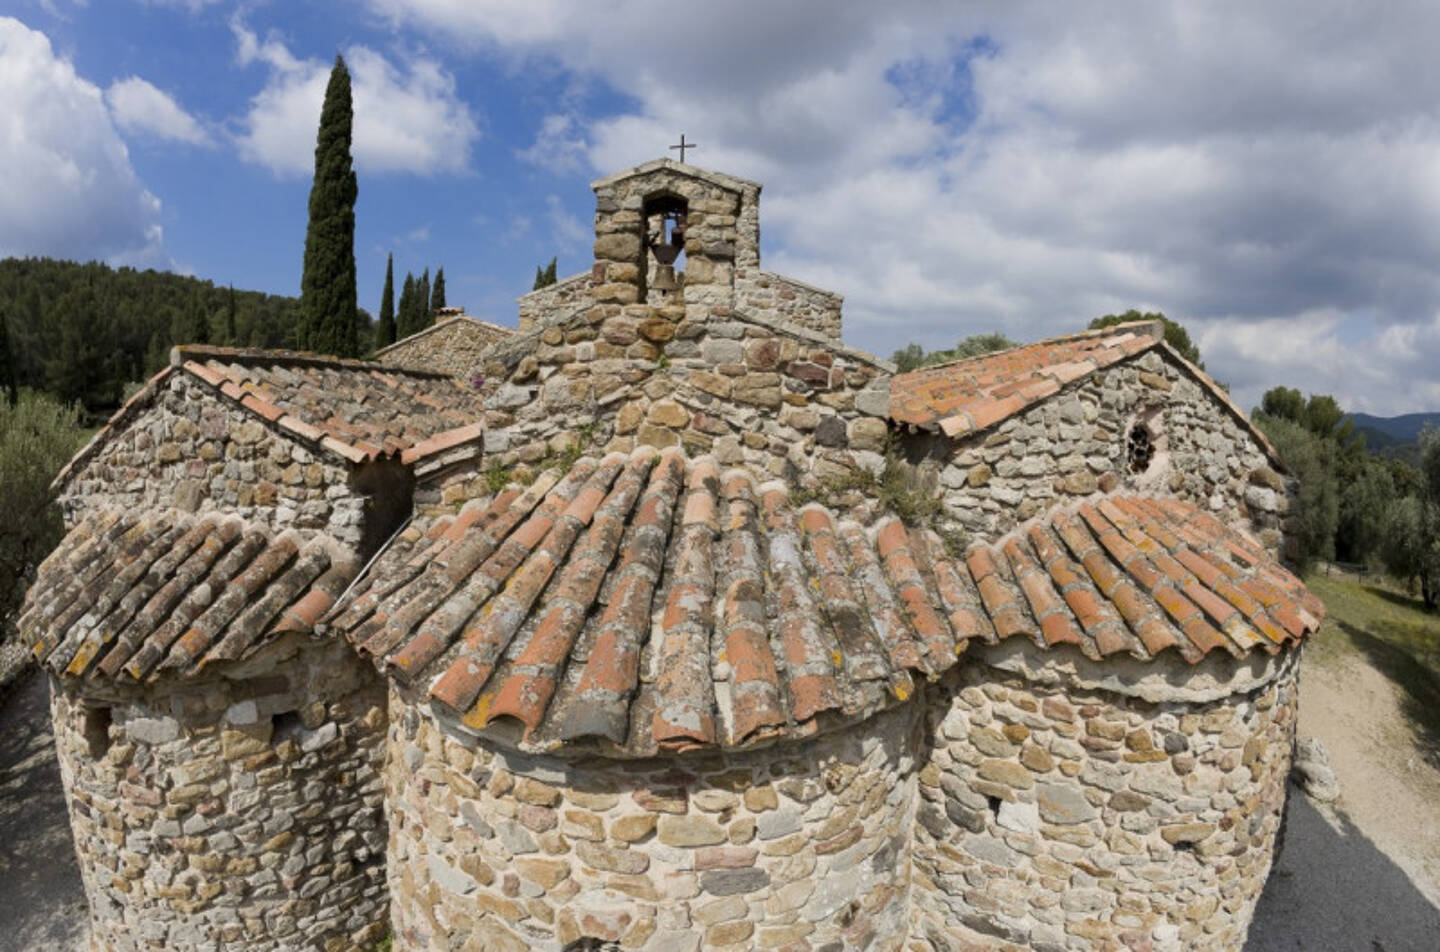 La chapelle Notre-Dame de Pépiole date du VIe siècle et est recensée comme l’une des plus anciennes chapelles d’Europe.